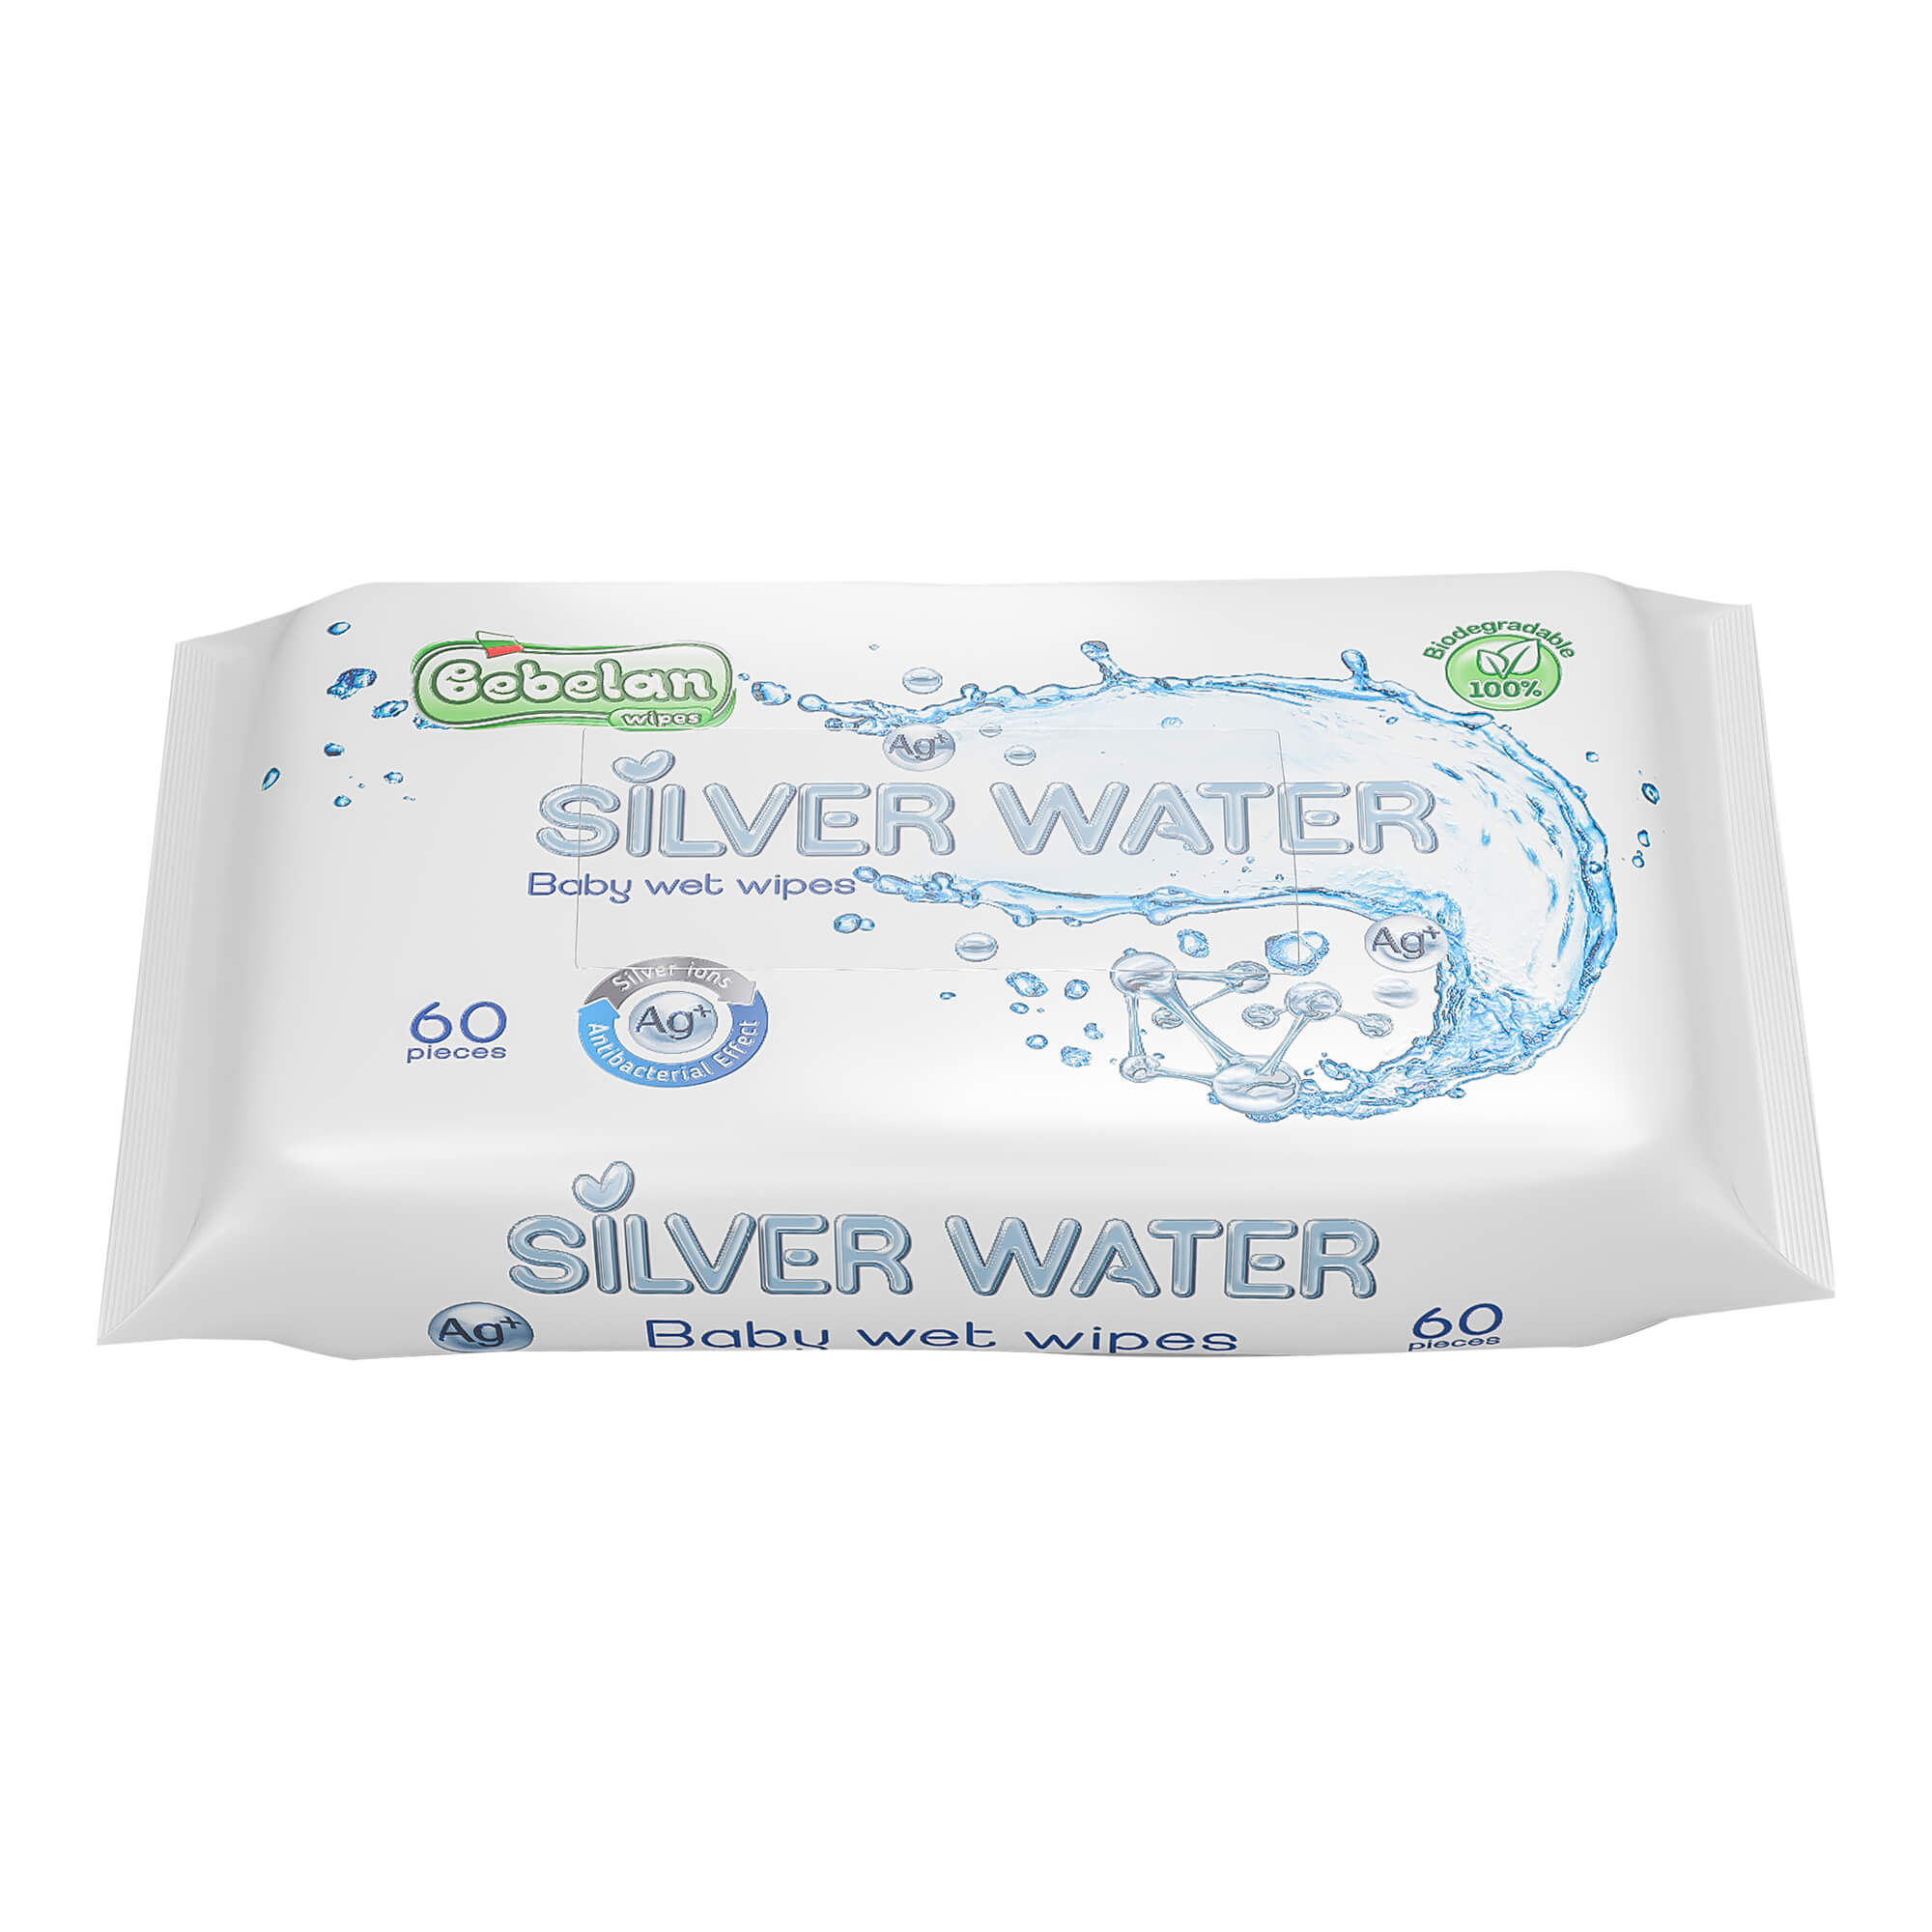 Feuchttücher aus 99,9 % Silber Wasser.